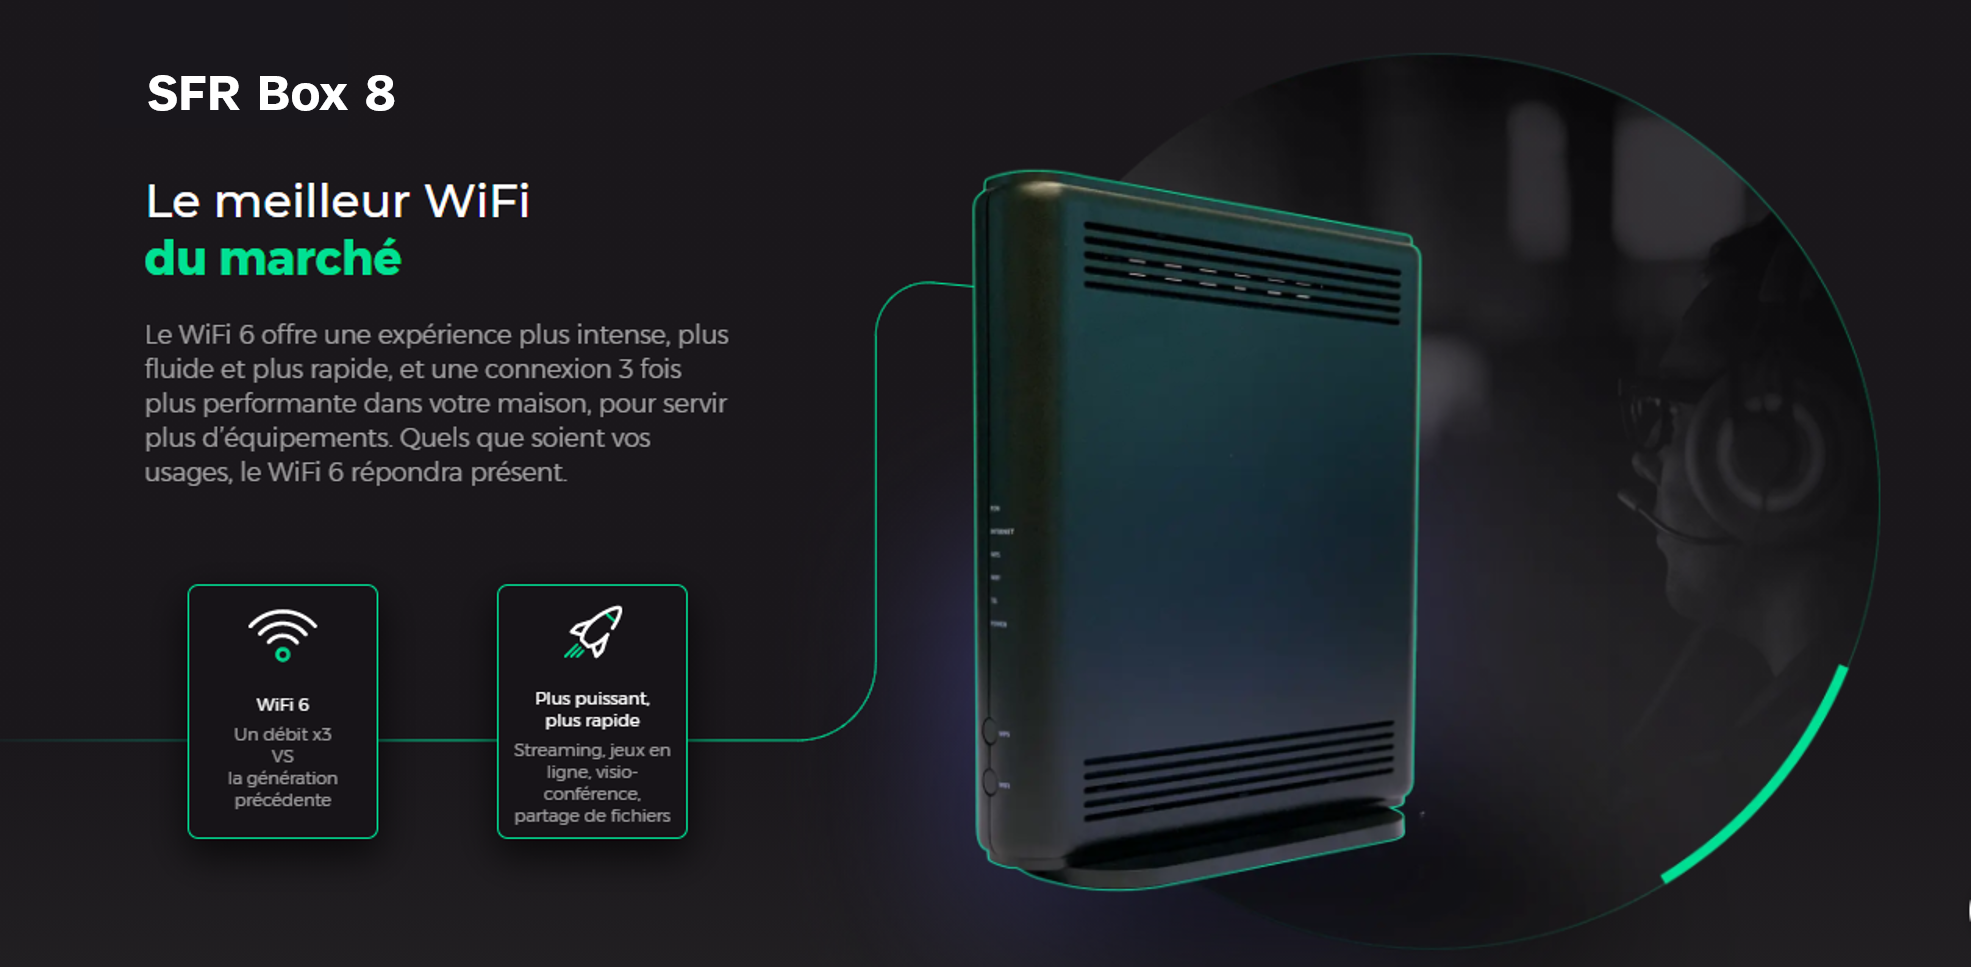 La SFR Box 8 pourra accueillir de nouveaux répéteurs Wi-Fi 6